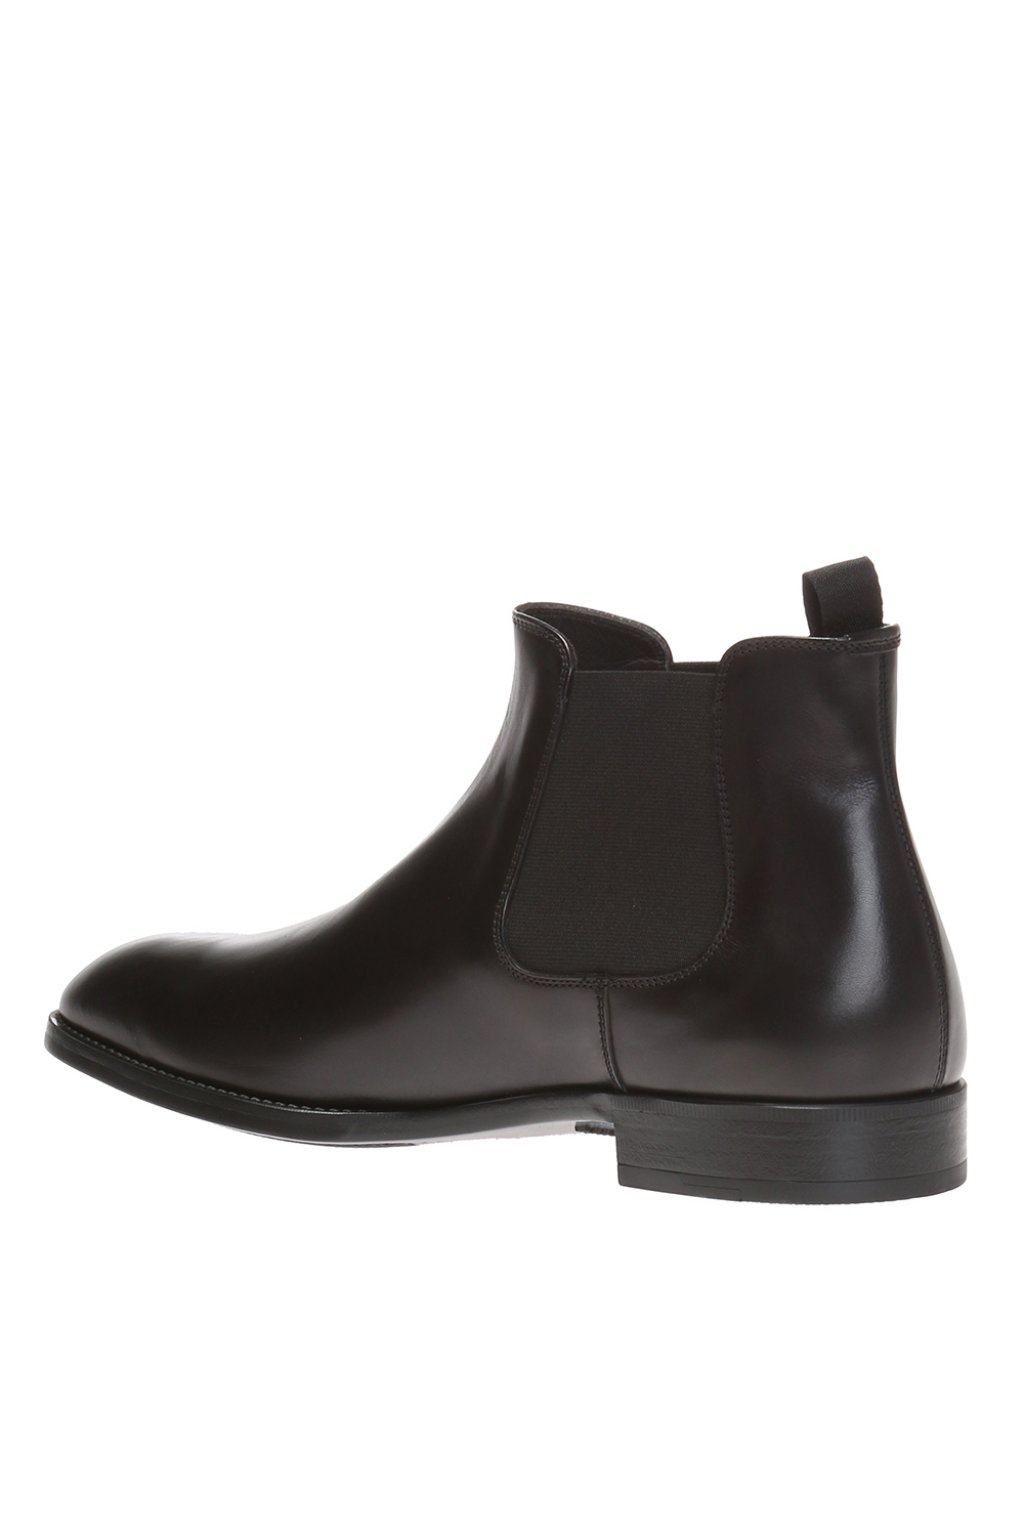 Giorgio Luminous armani Leather chelsea boots